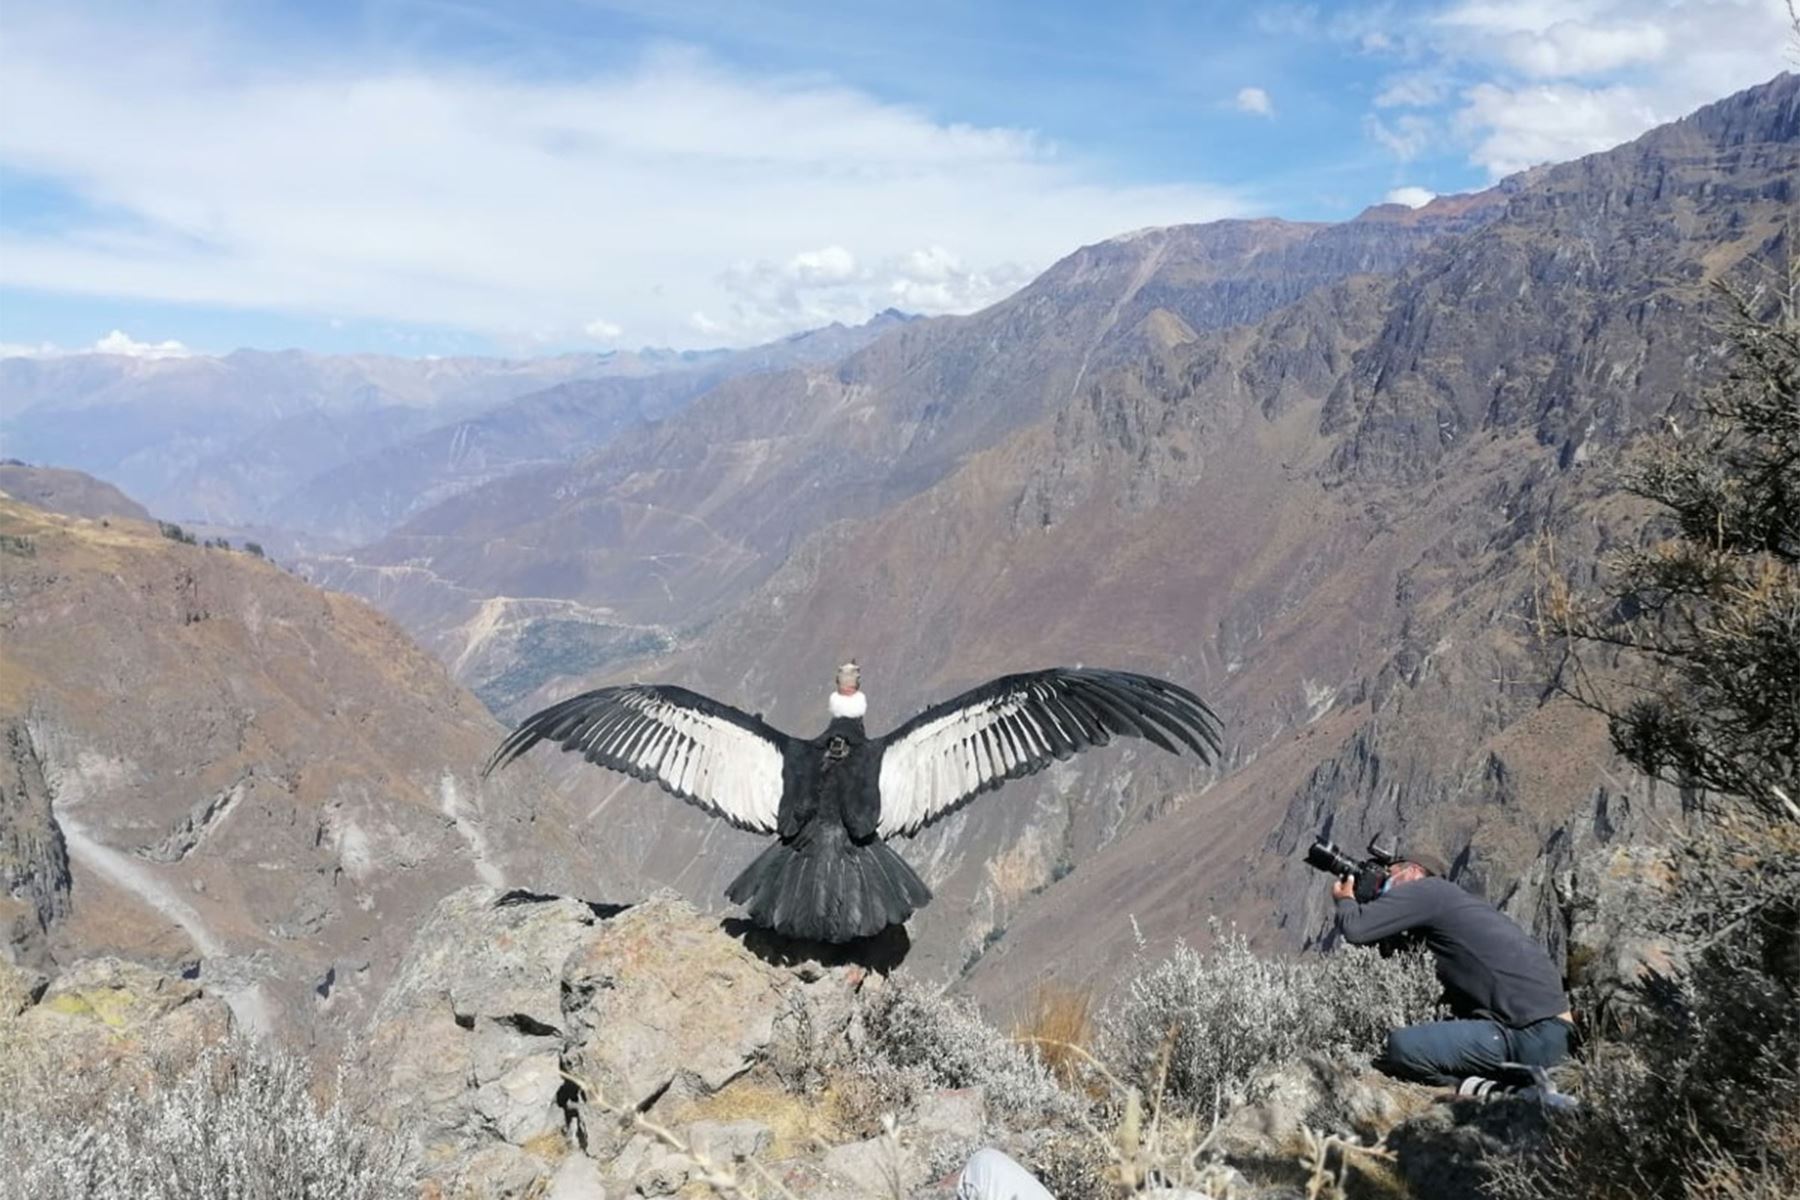 El vuelo de la mítica ave andina se puede observar y medir gracias al transmisor satelital donado por el Programa de Investigación de Aves Rapaces de Bolivia. Foto: ANDINA/Difusión